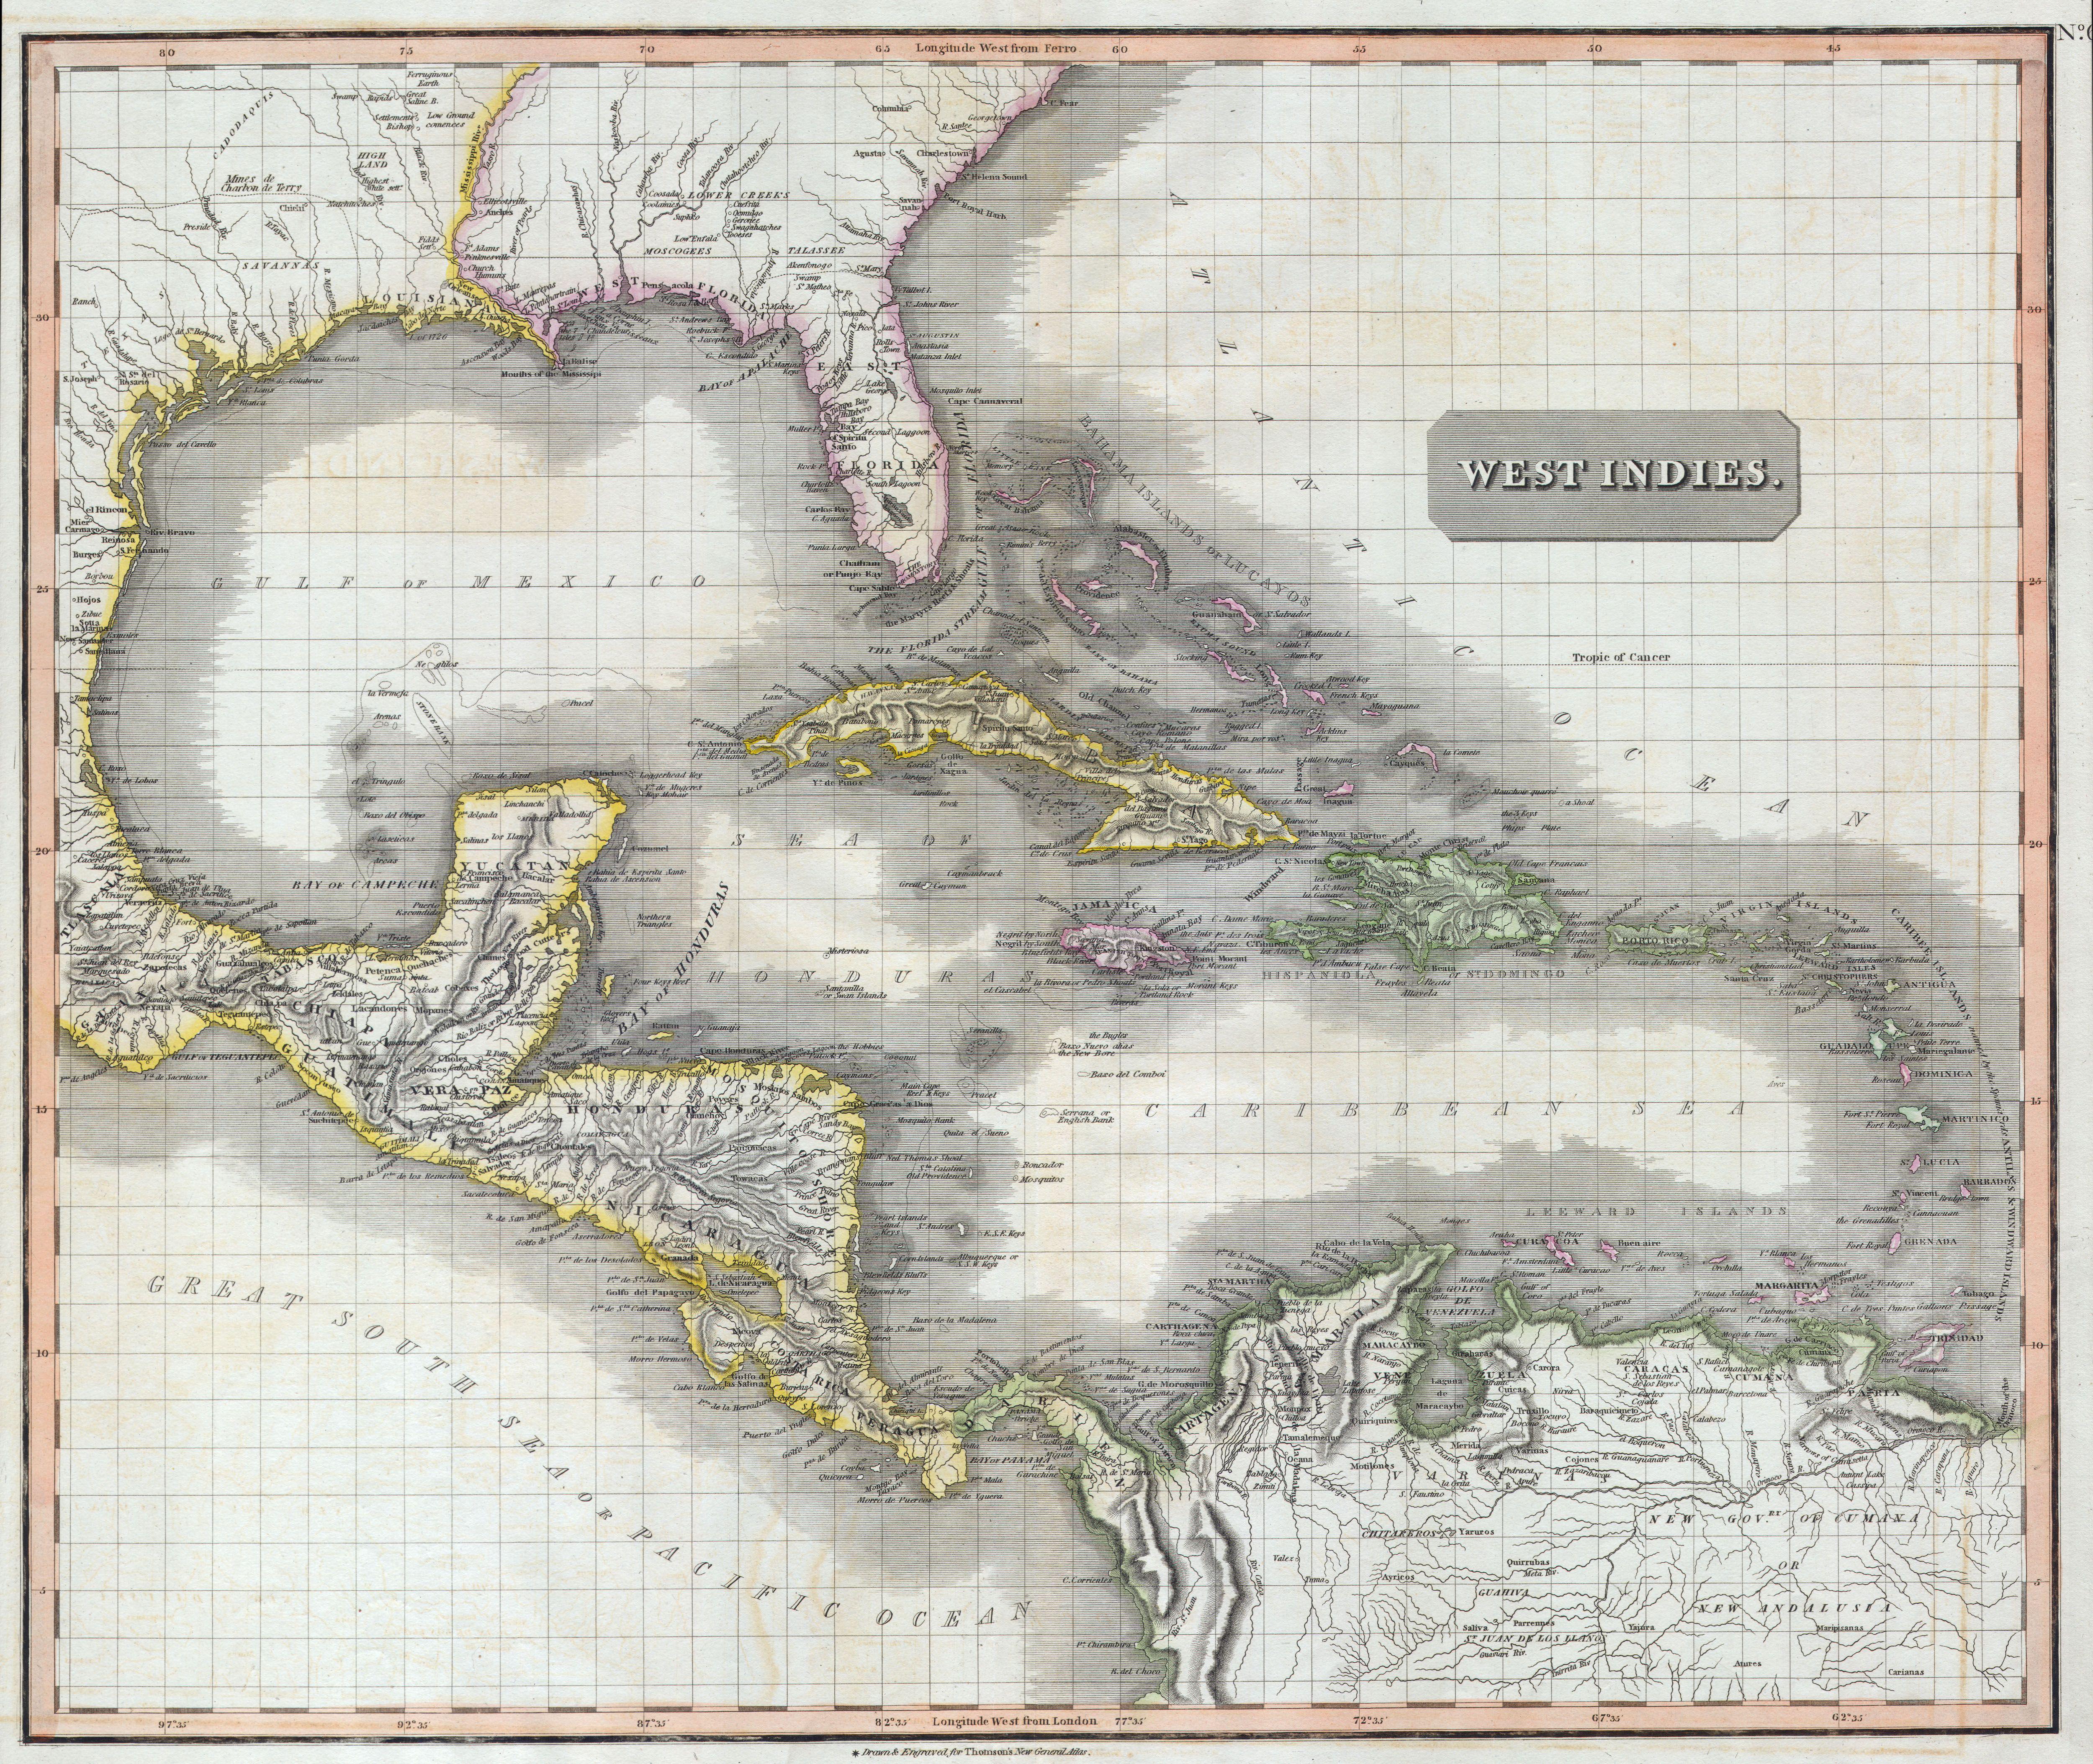 Historische Karte der Karibik 1814